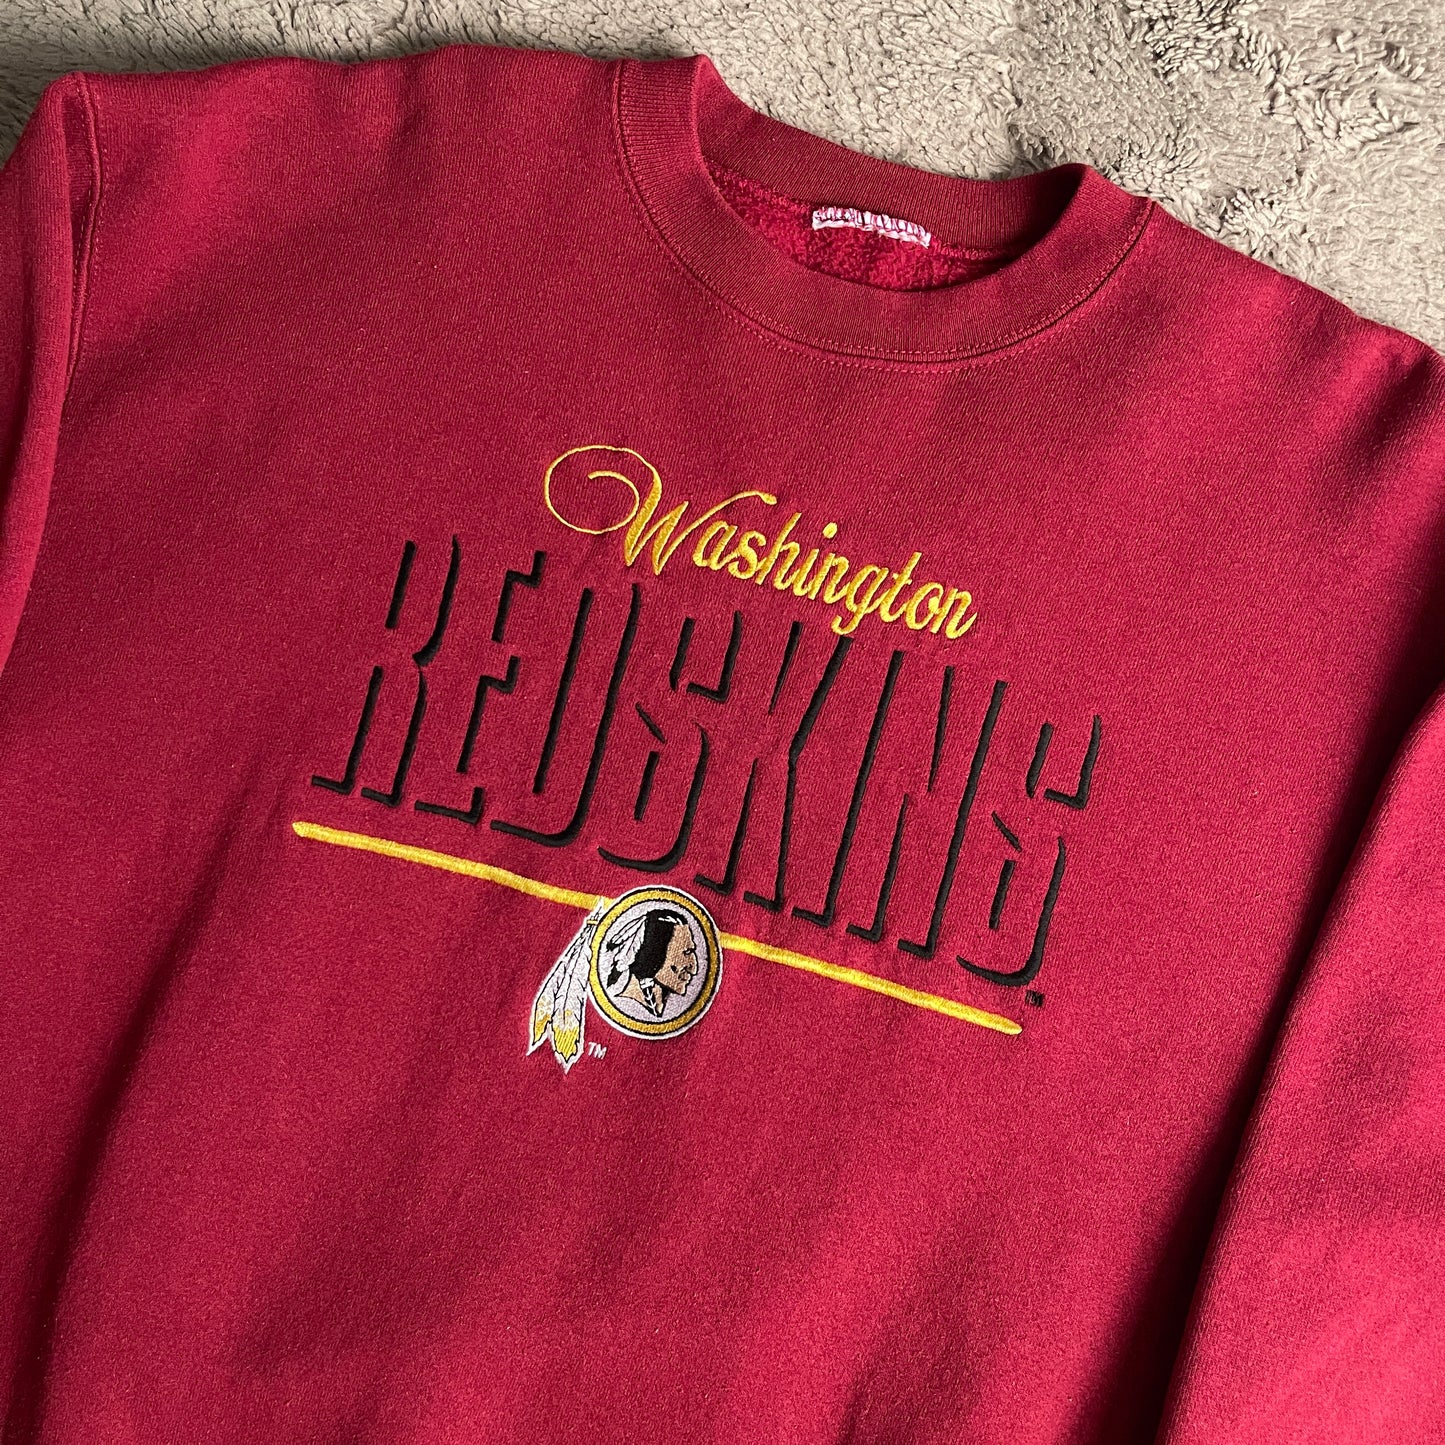 Vintage NFL Washington Redskins Crewneck (L)